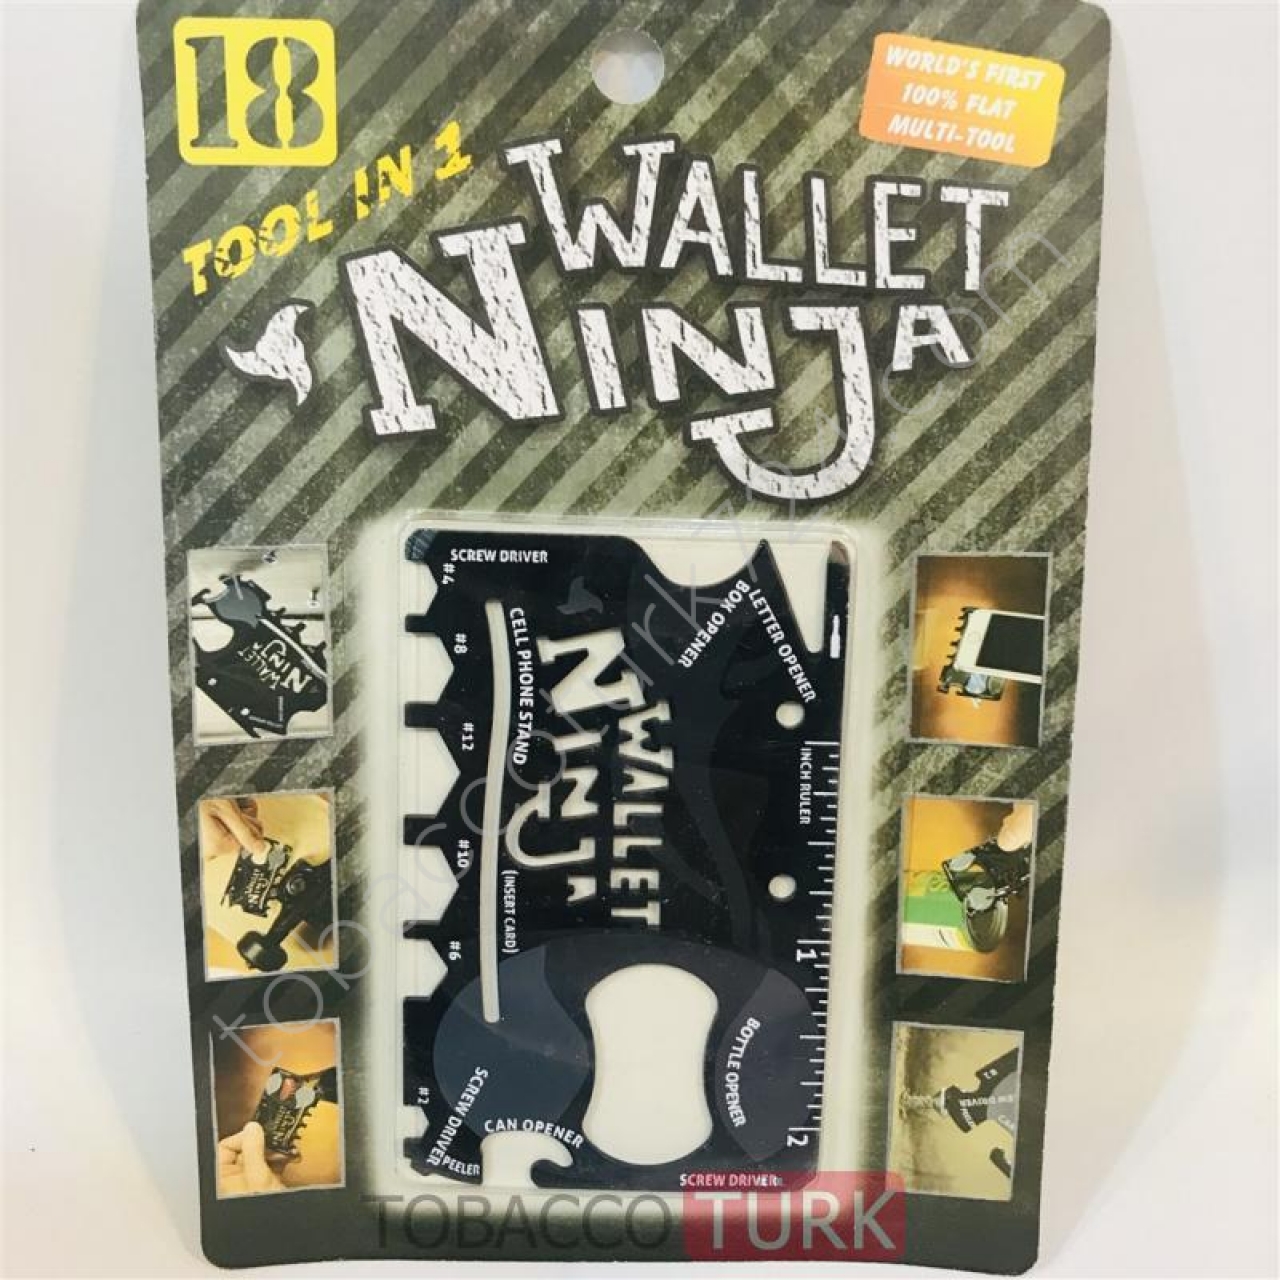 Ninja Wallet 18 in 1 Çok Fonksiyonlu Ninja Kart Bıçak